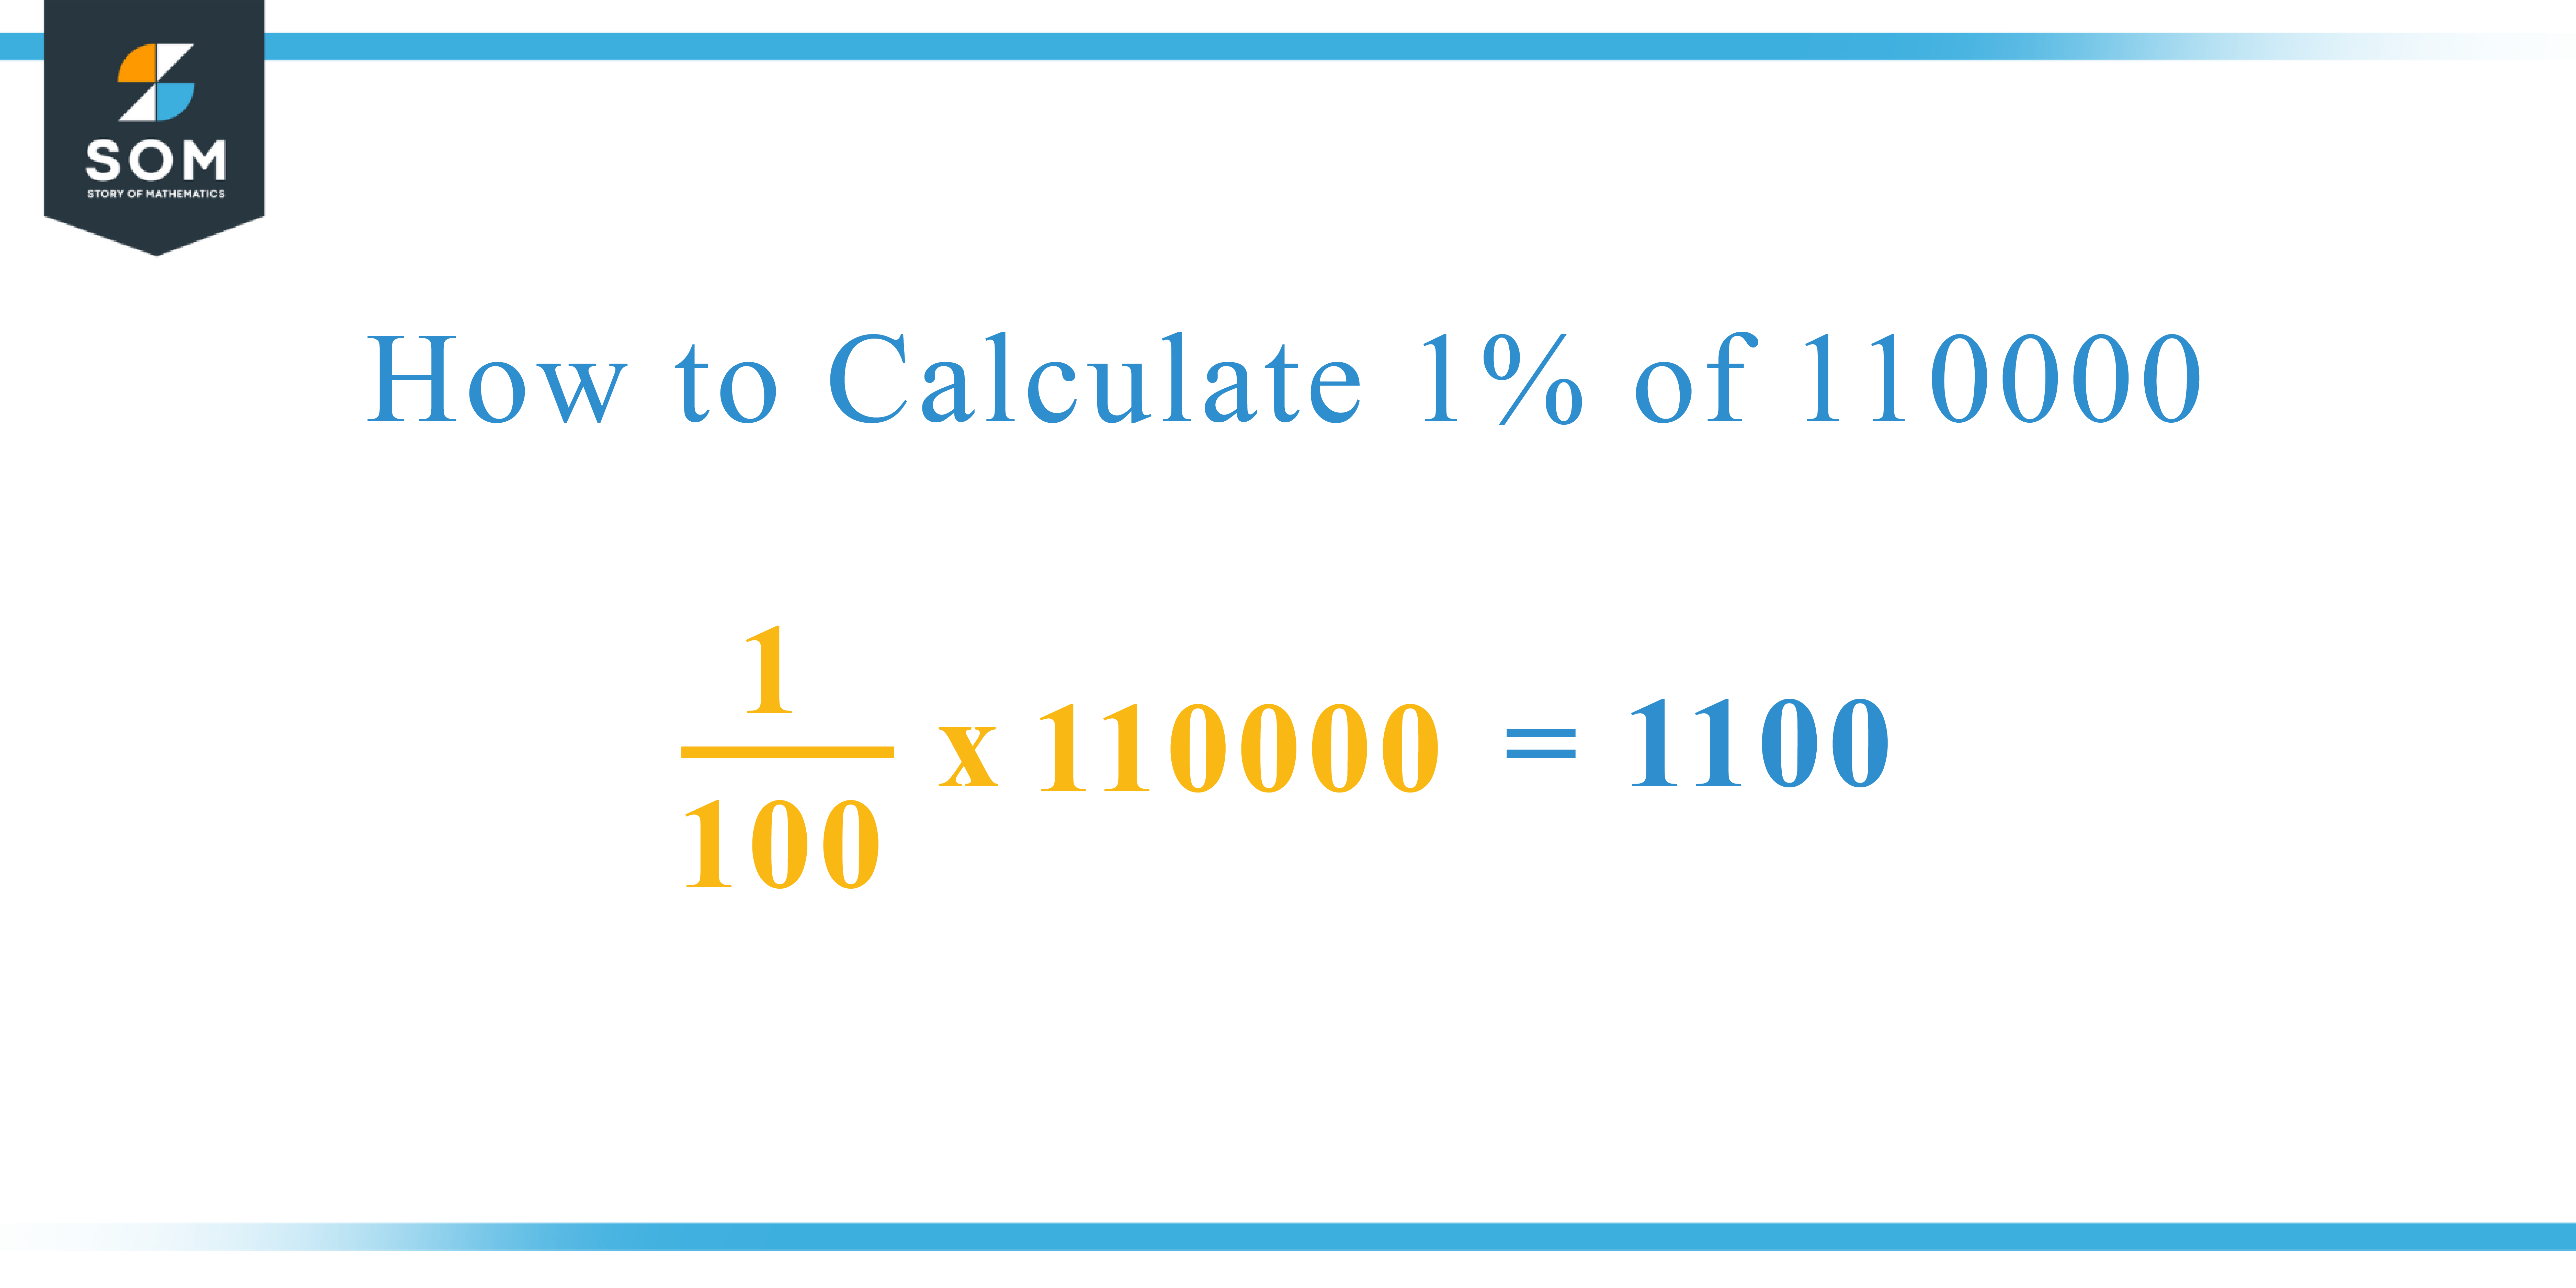 Calculation 1 percent of 110000